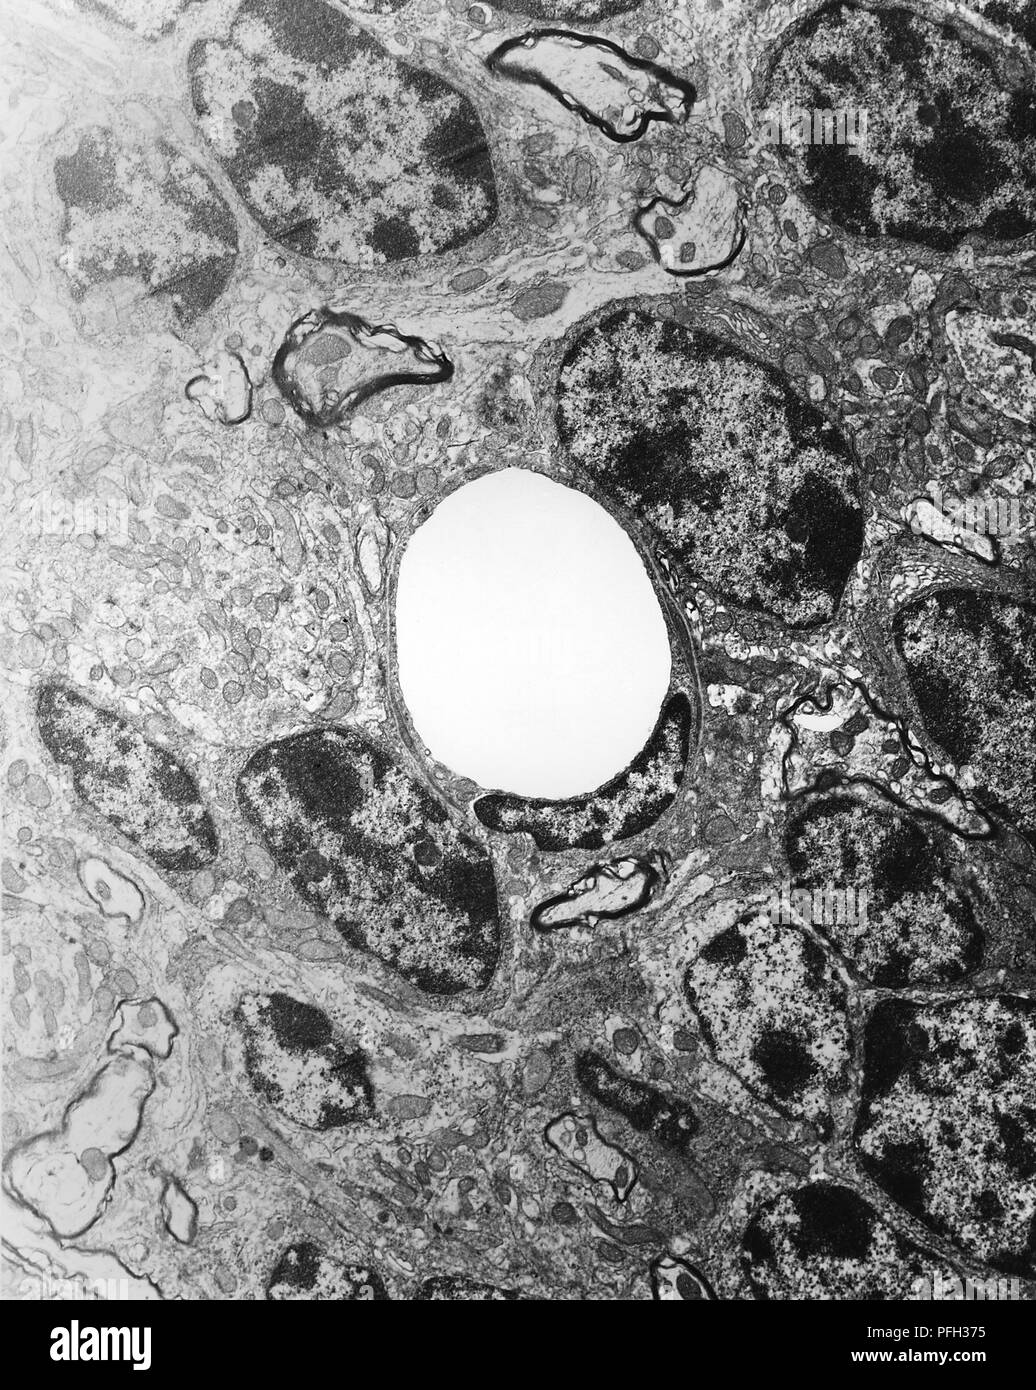 Vue en coupe d'un cerveau de souris normales et non infecté de perfusion capillaire-fixé à une tension artérielle normale, révélé dans la microscopie électronique de transmission (TEM) de droit, 1978. Image courtoisie Centres for Disease Control (CDC) / Dr Ed Ewing. () Banque D'Images